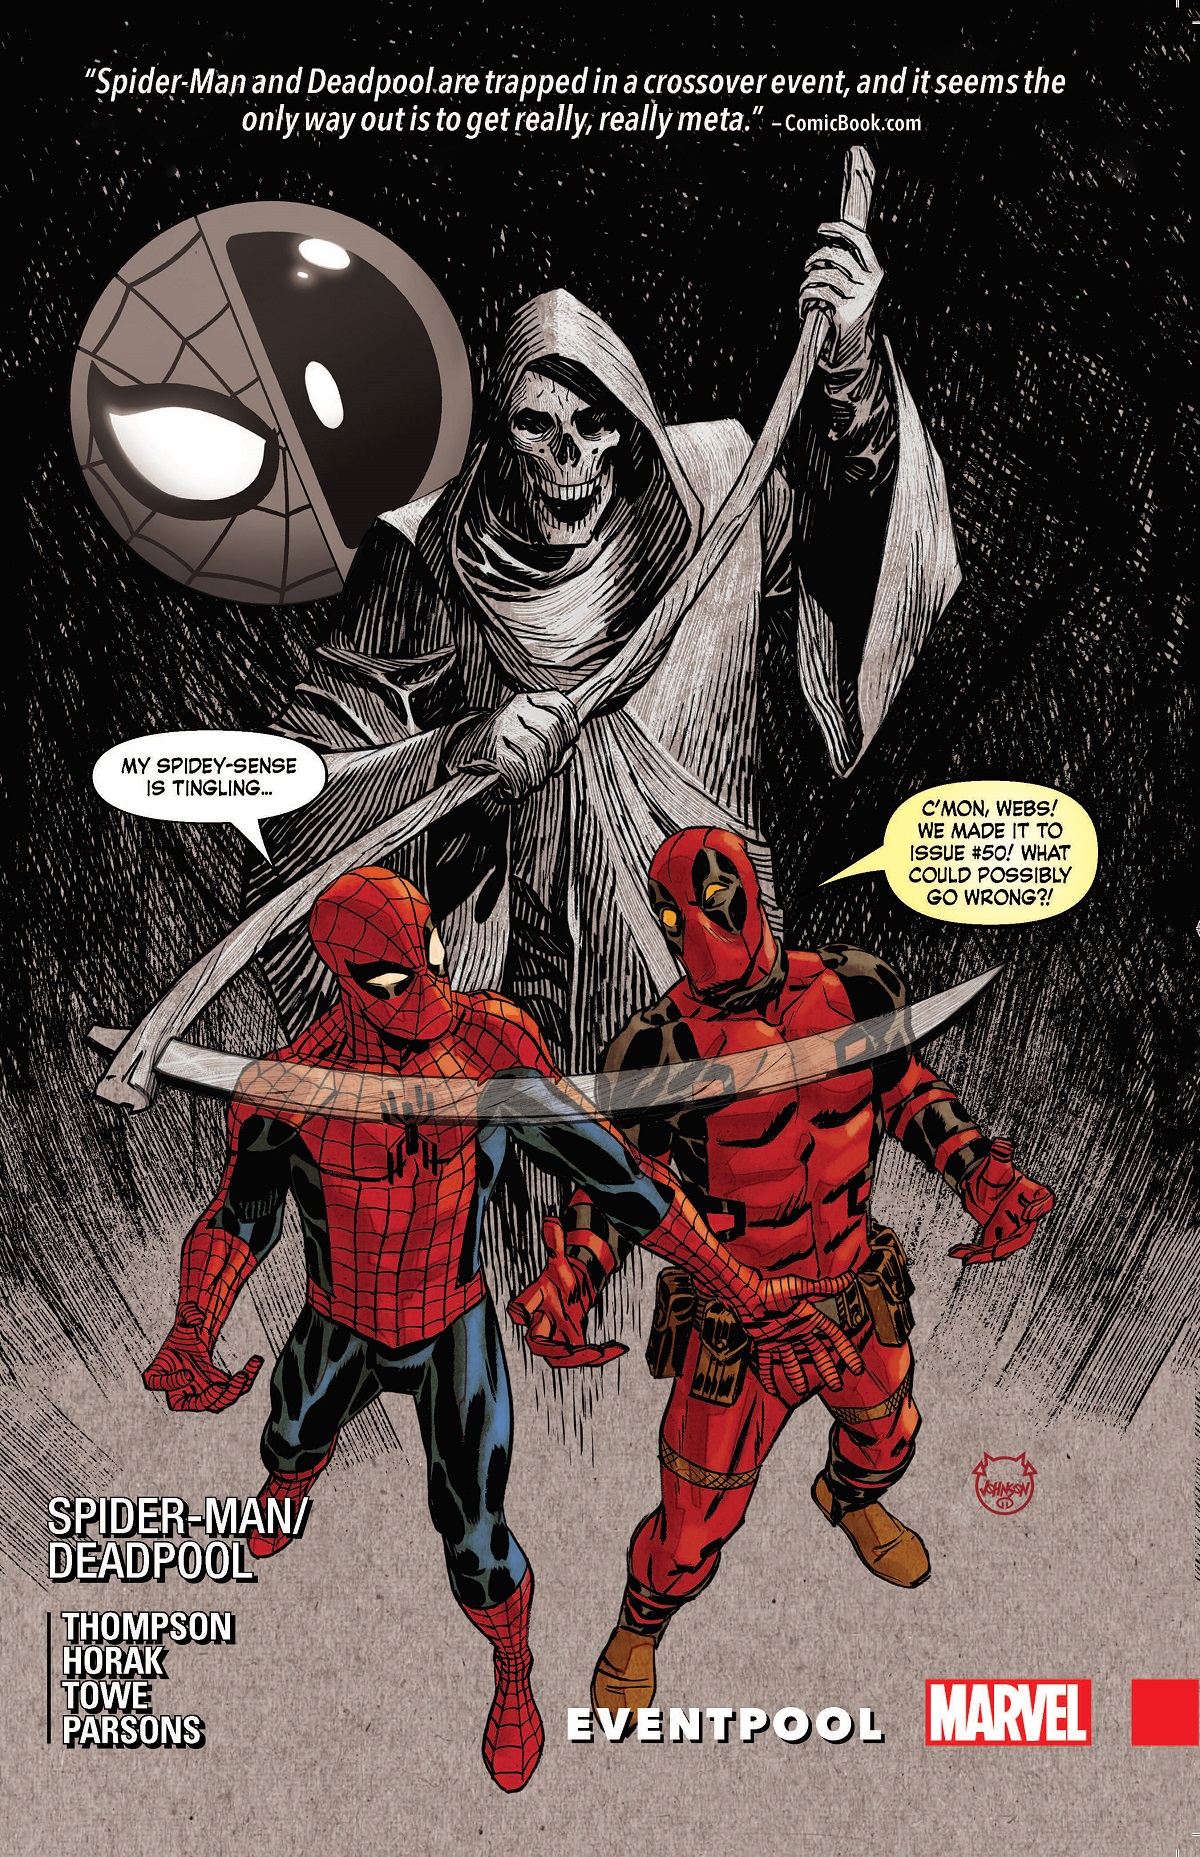 Spider-Man/Deadpool Vol. 9: Eventpool (Trade Paperback)